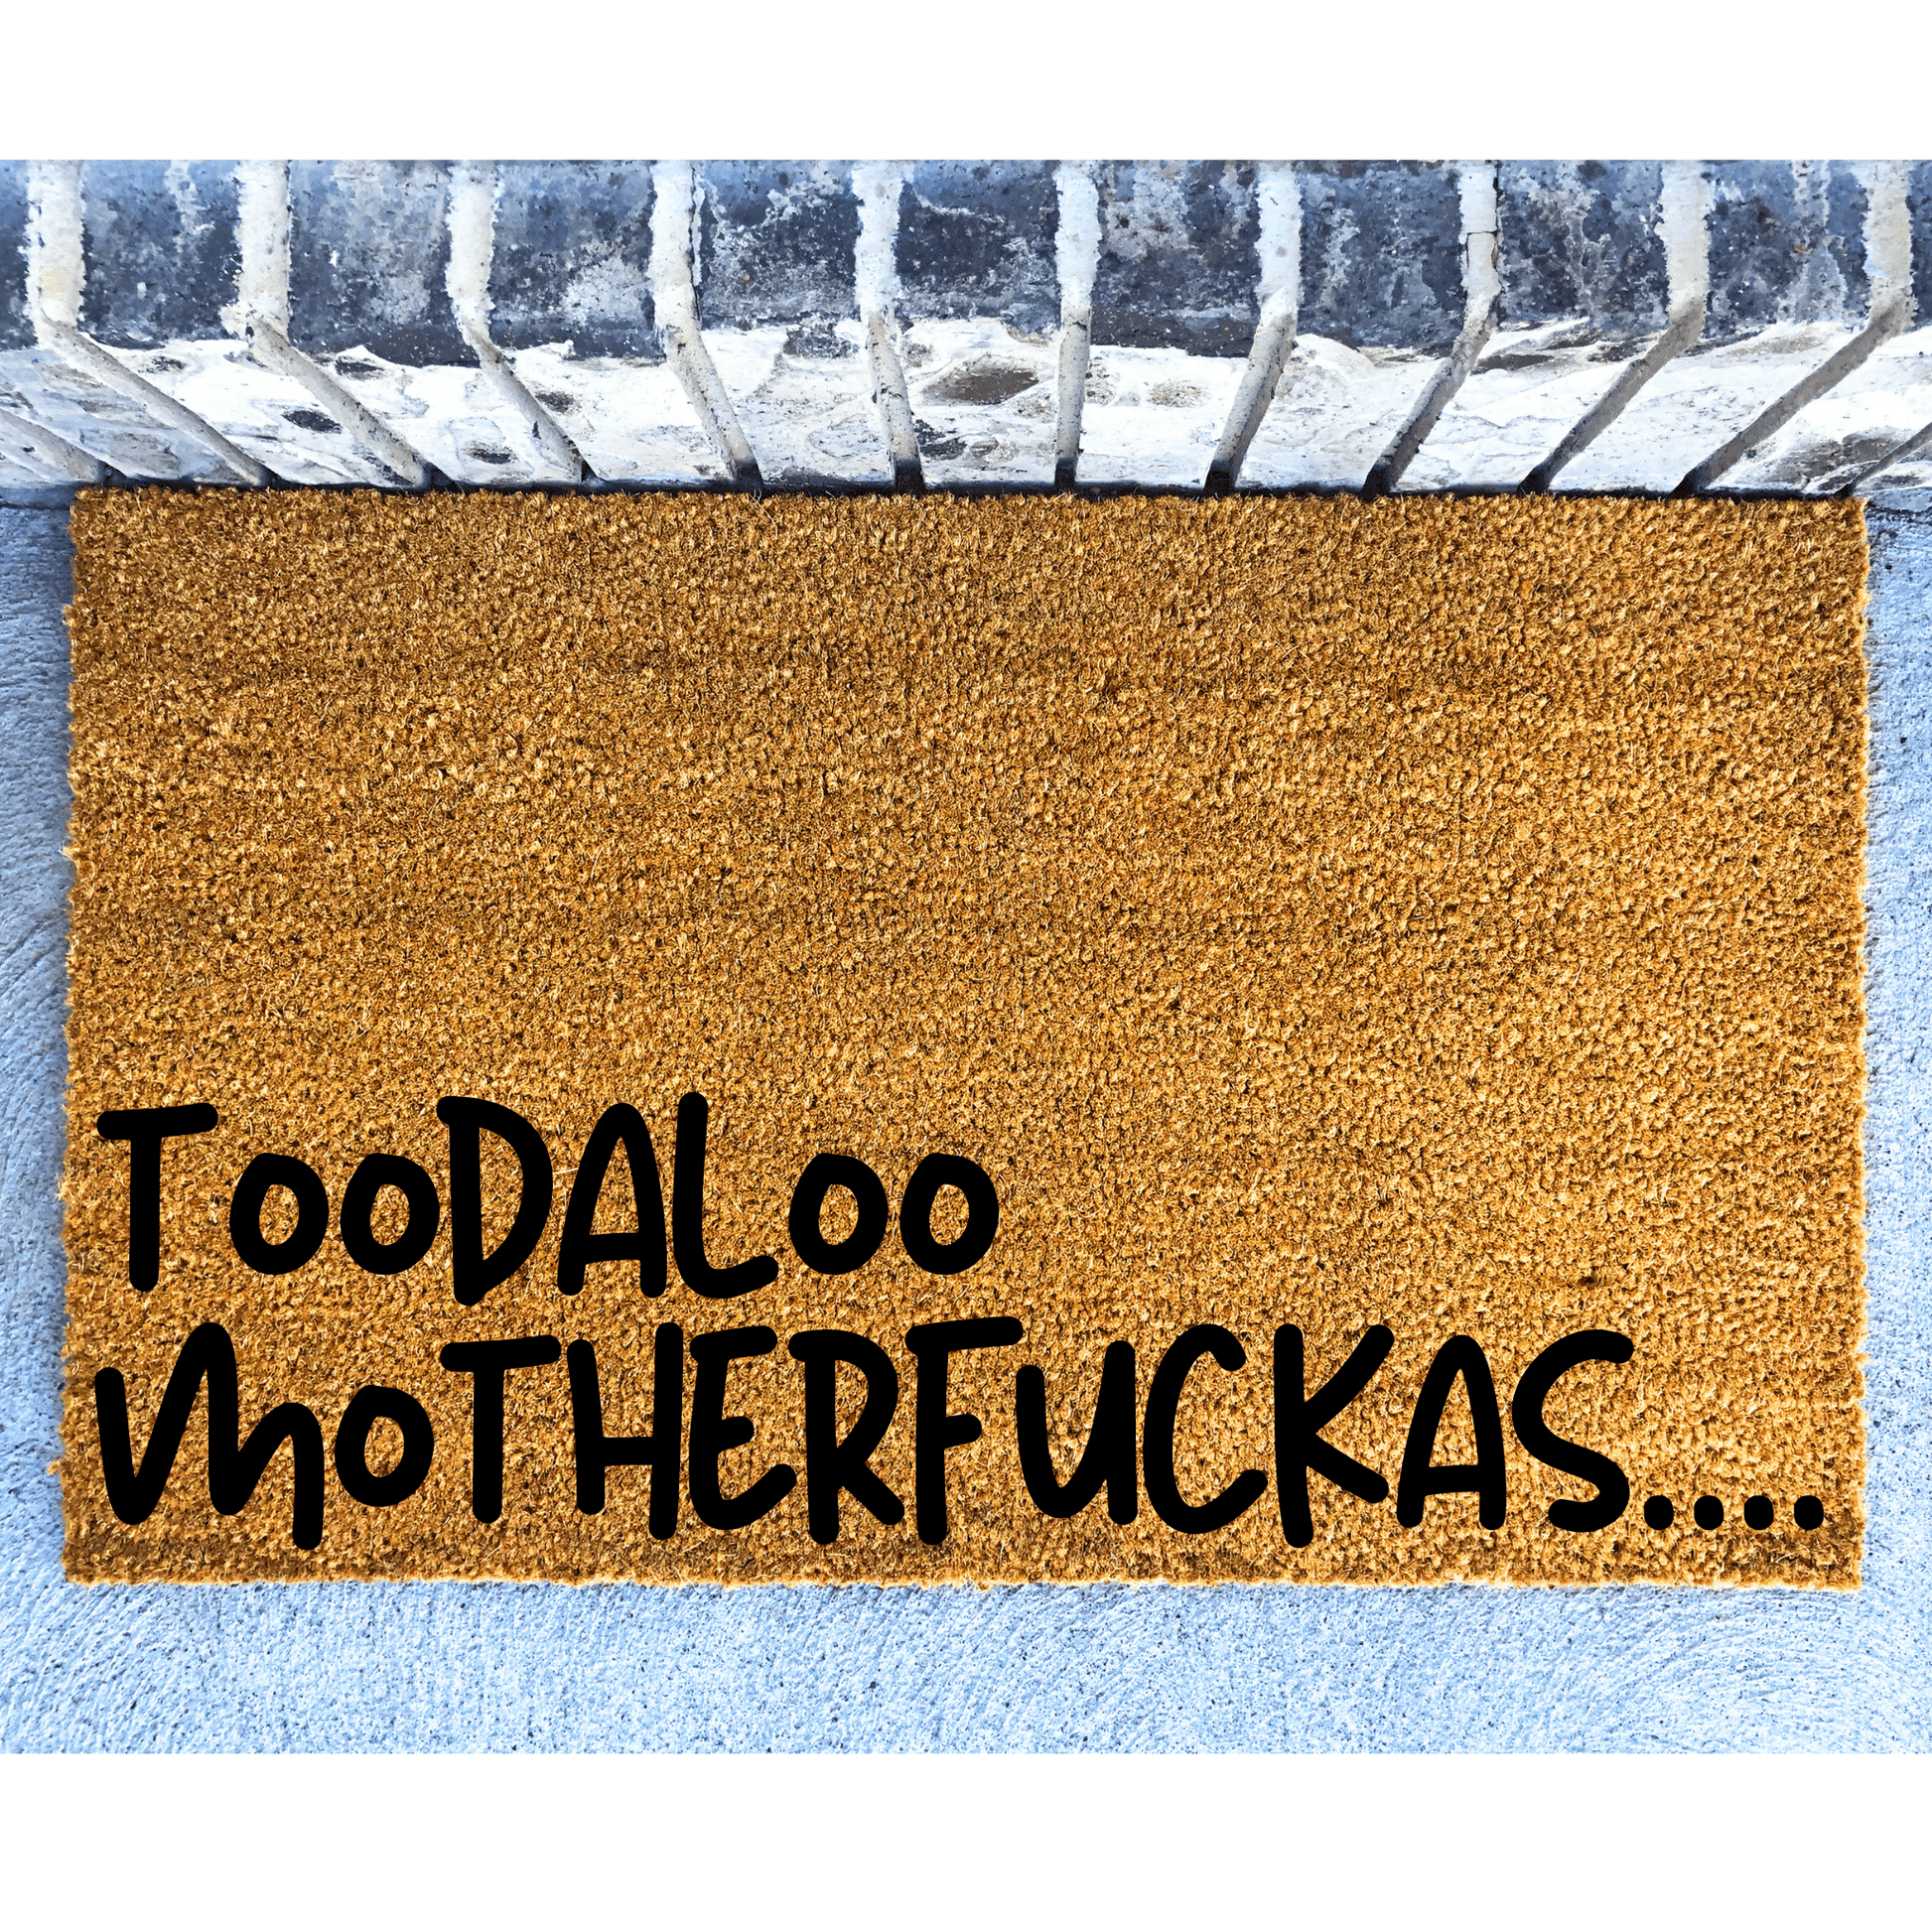 Toodaloo MotherFu&Kas doormat - Personalised Doormat Australia